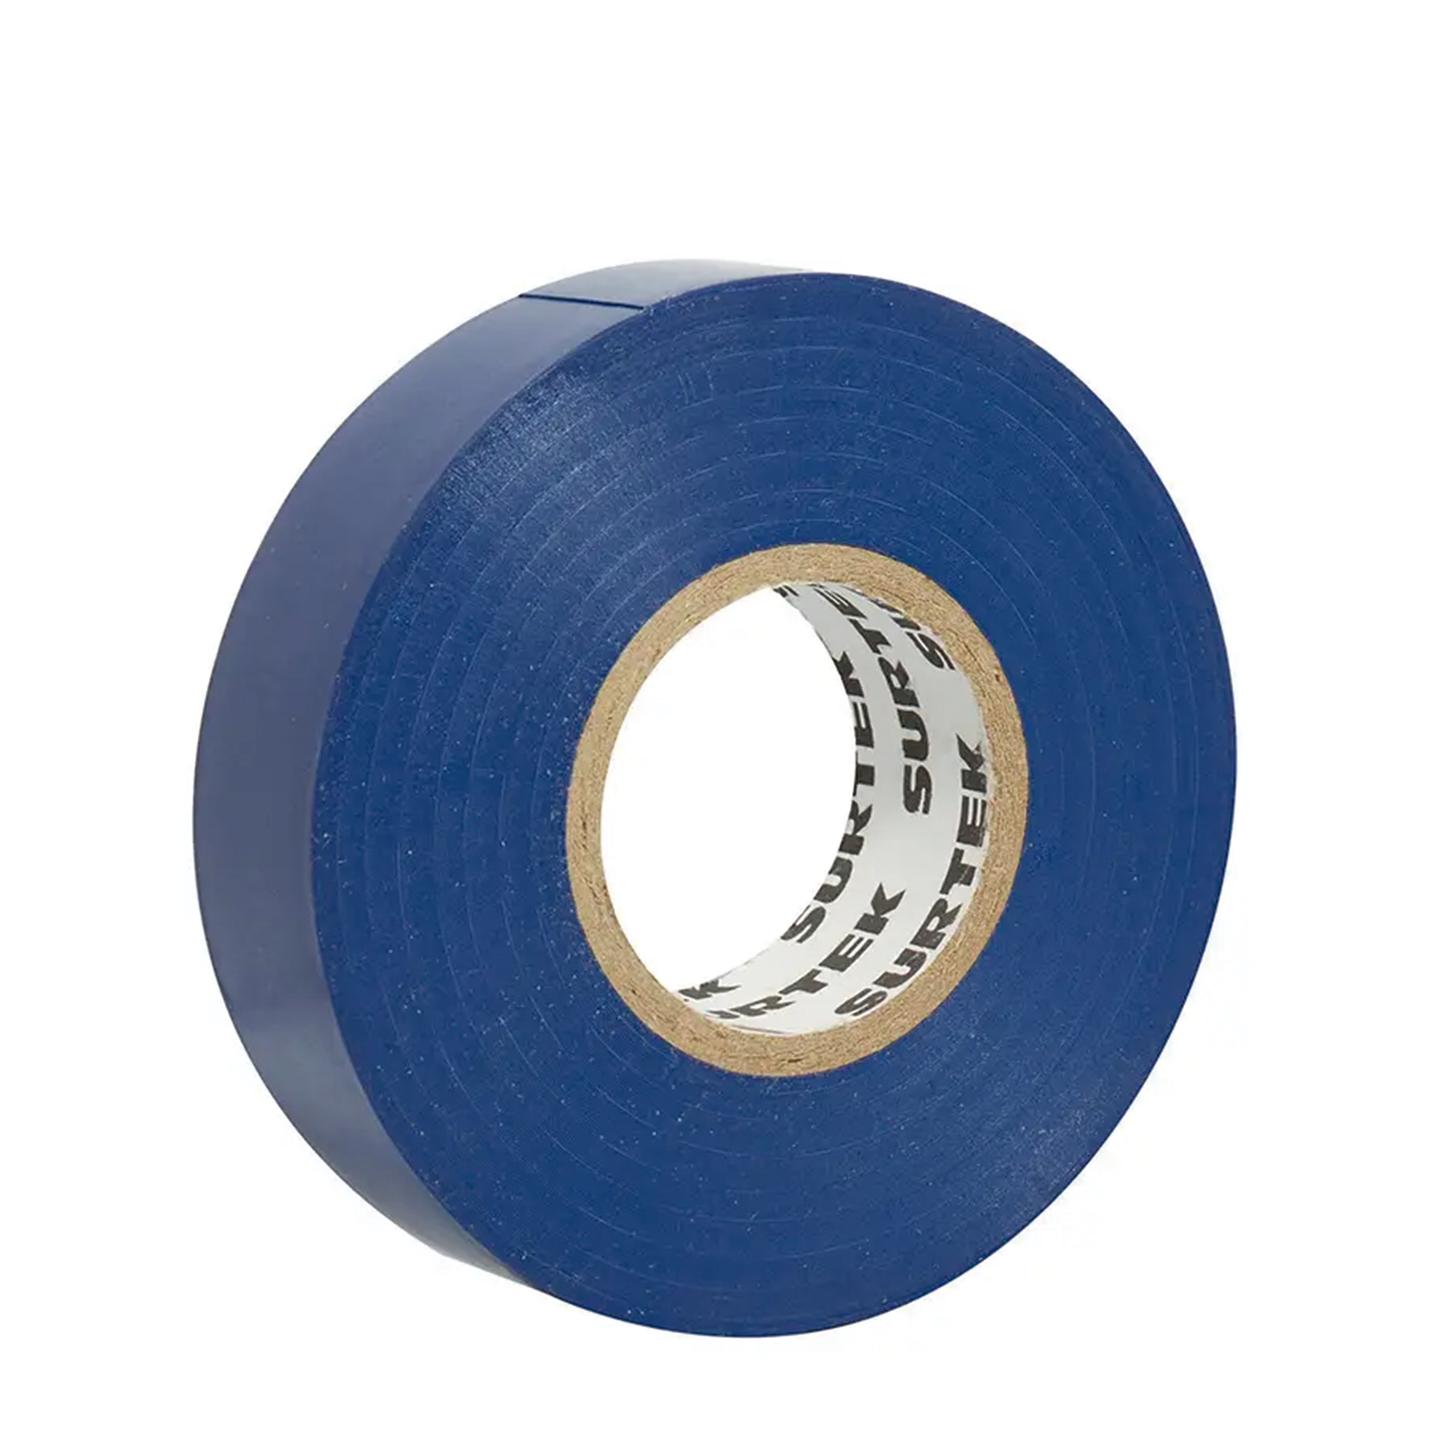 Cinta para aislar color Azul de 19 mm x  18 metros / Fabricada en PVC / Adhesivo acrílico.